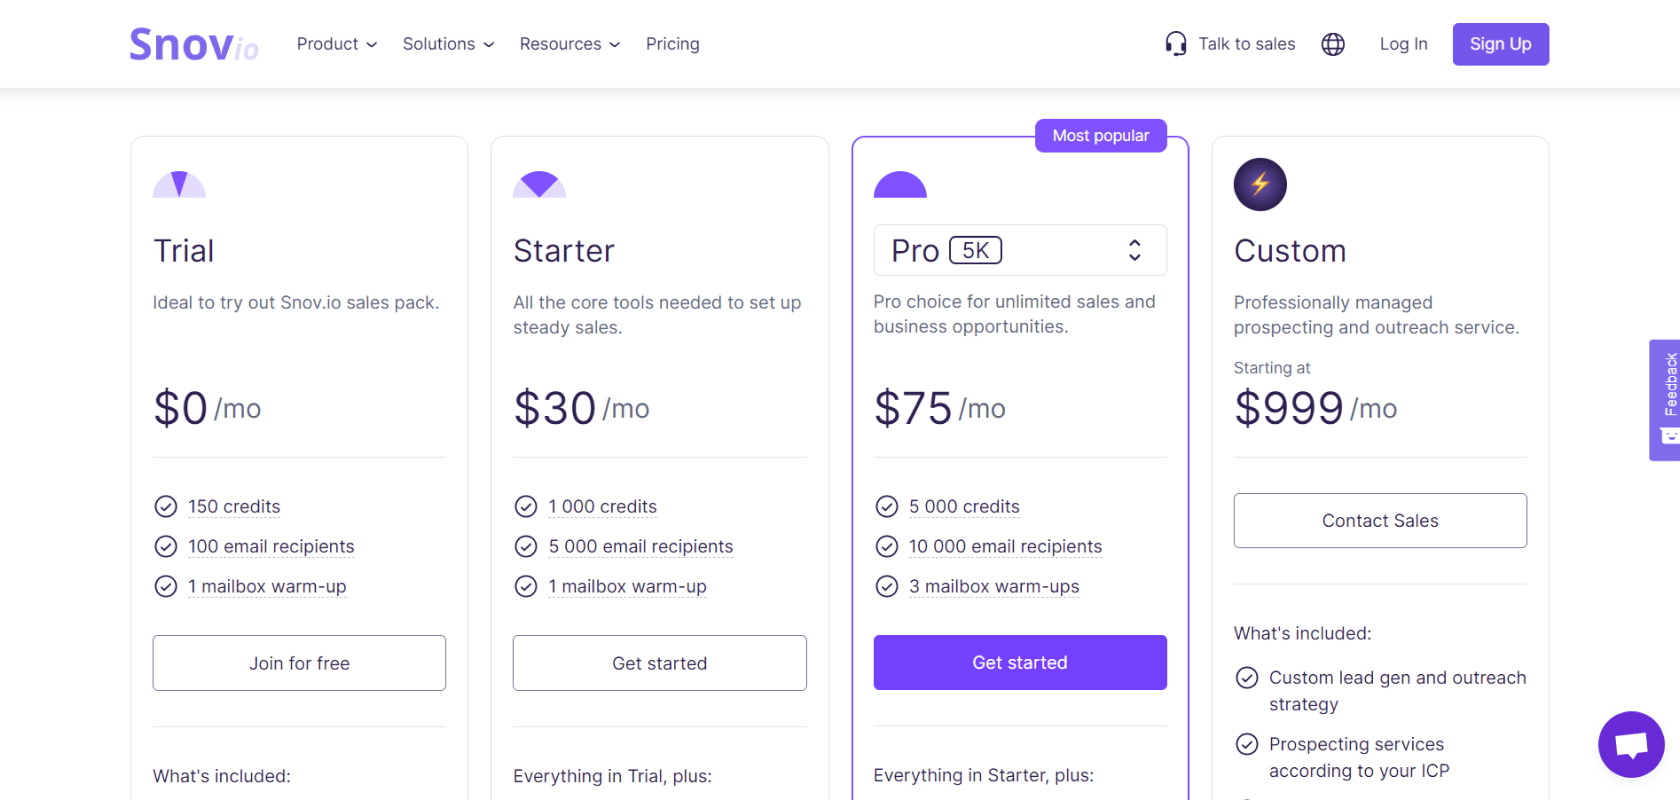 Snov.io's pricing page